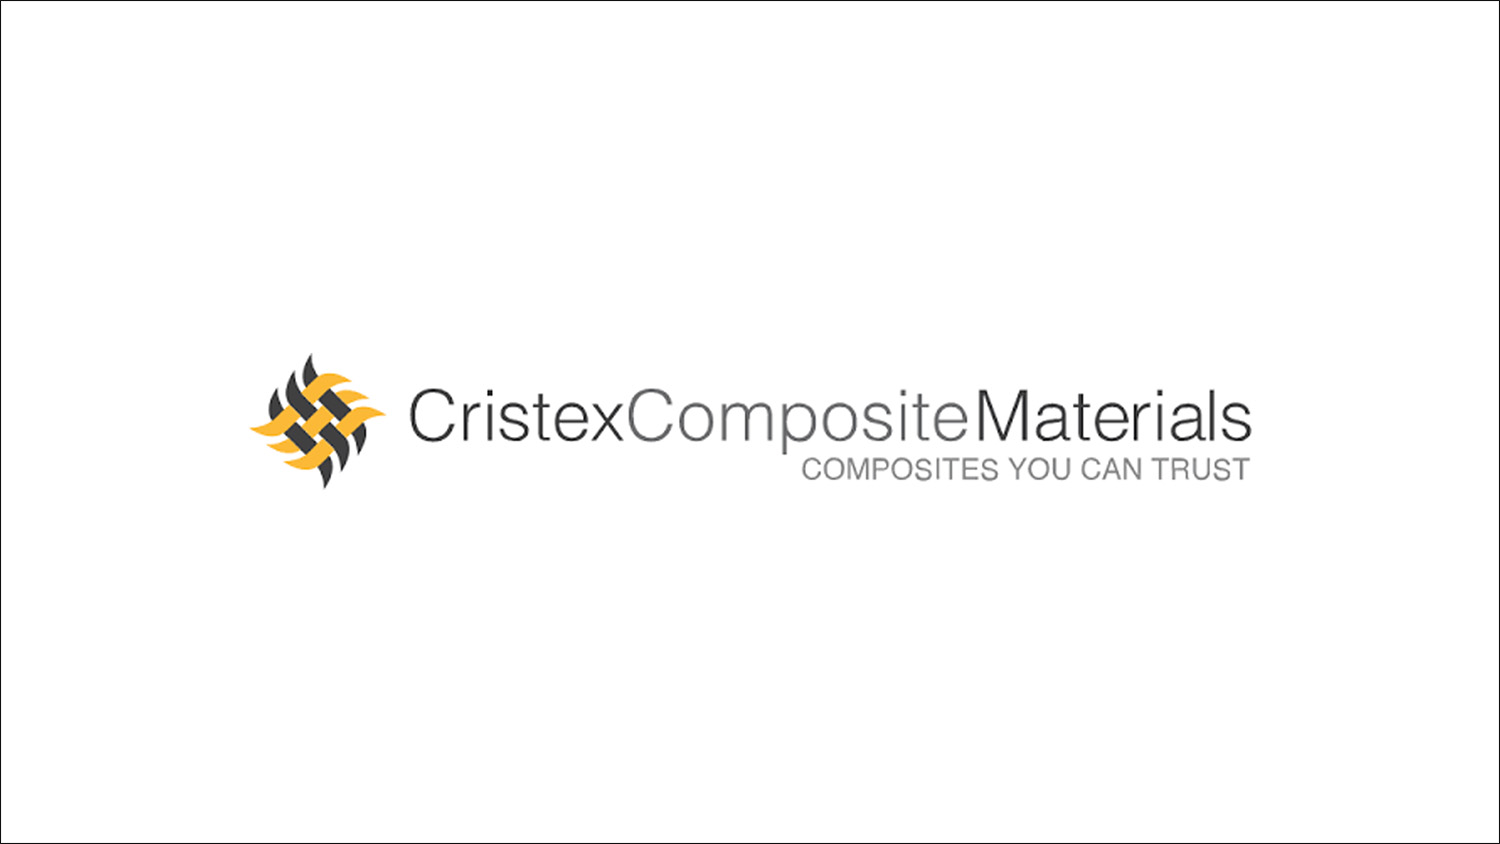 Cristex Composite Materials